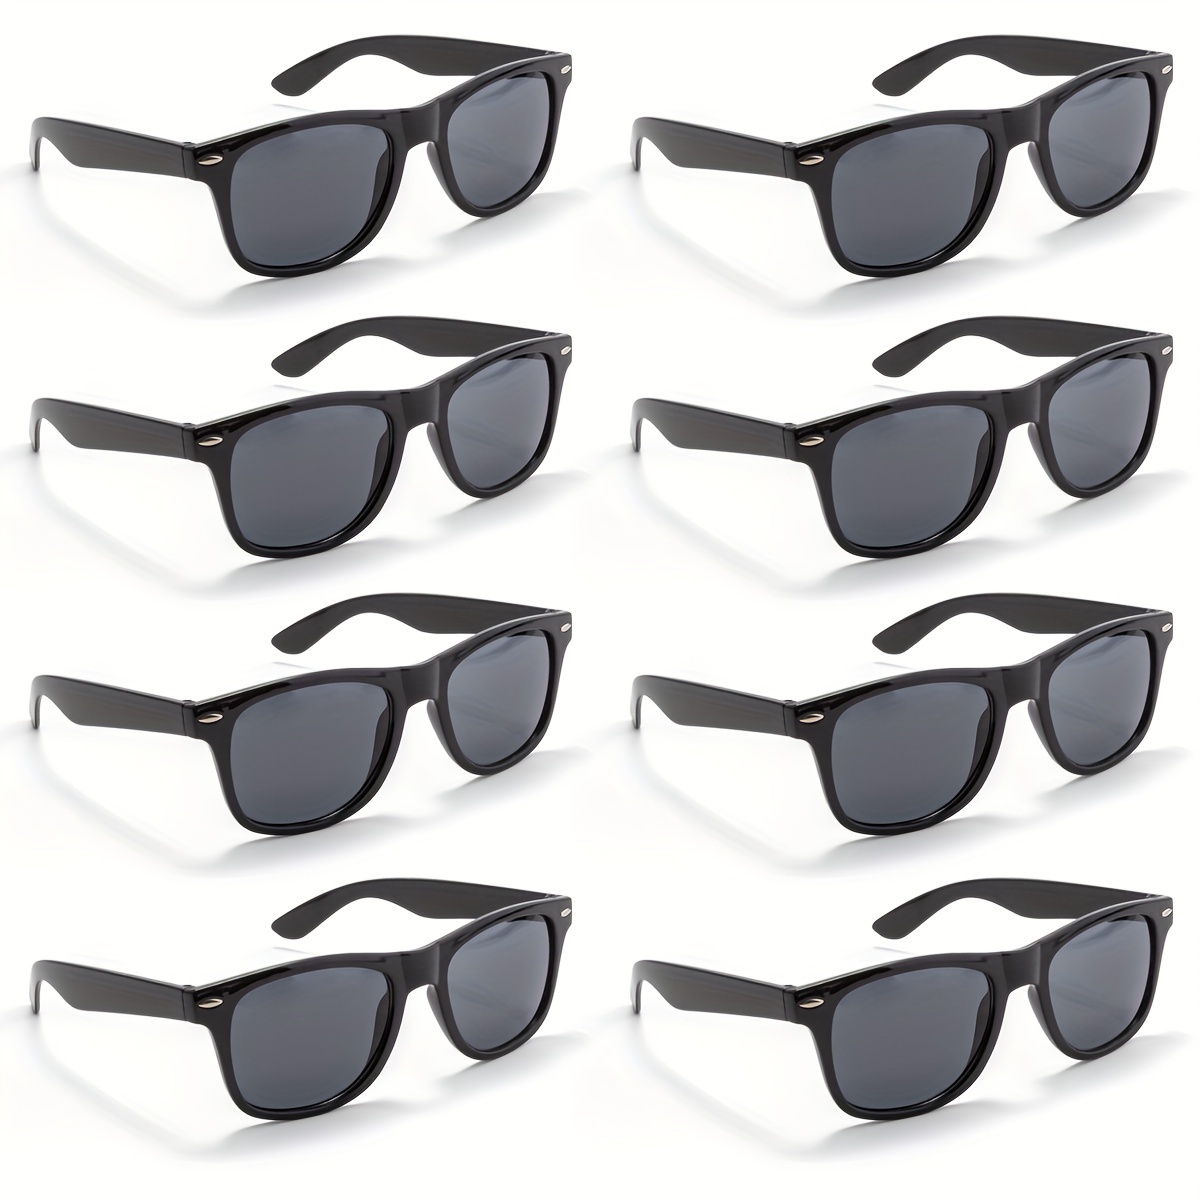 

8 paires de lunettes de soleil rondes noires décontractées, adaptées aux voyages en plein air, aux fêtes de vacances, à la plage d'été, à la décoration des navetteurs.